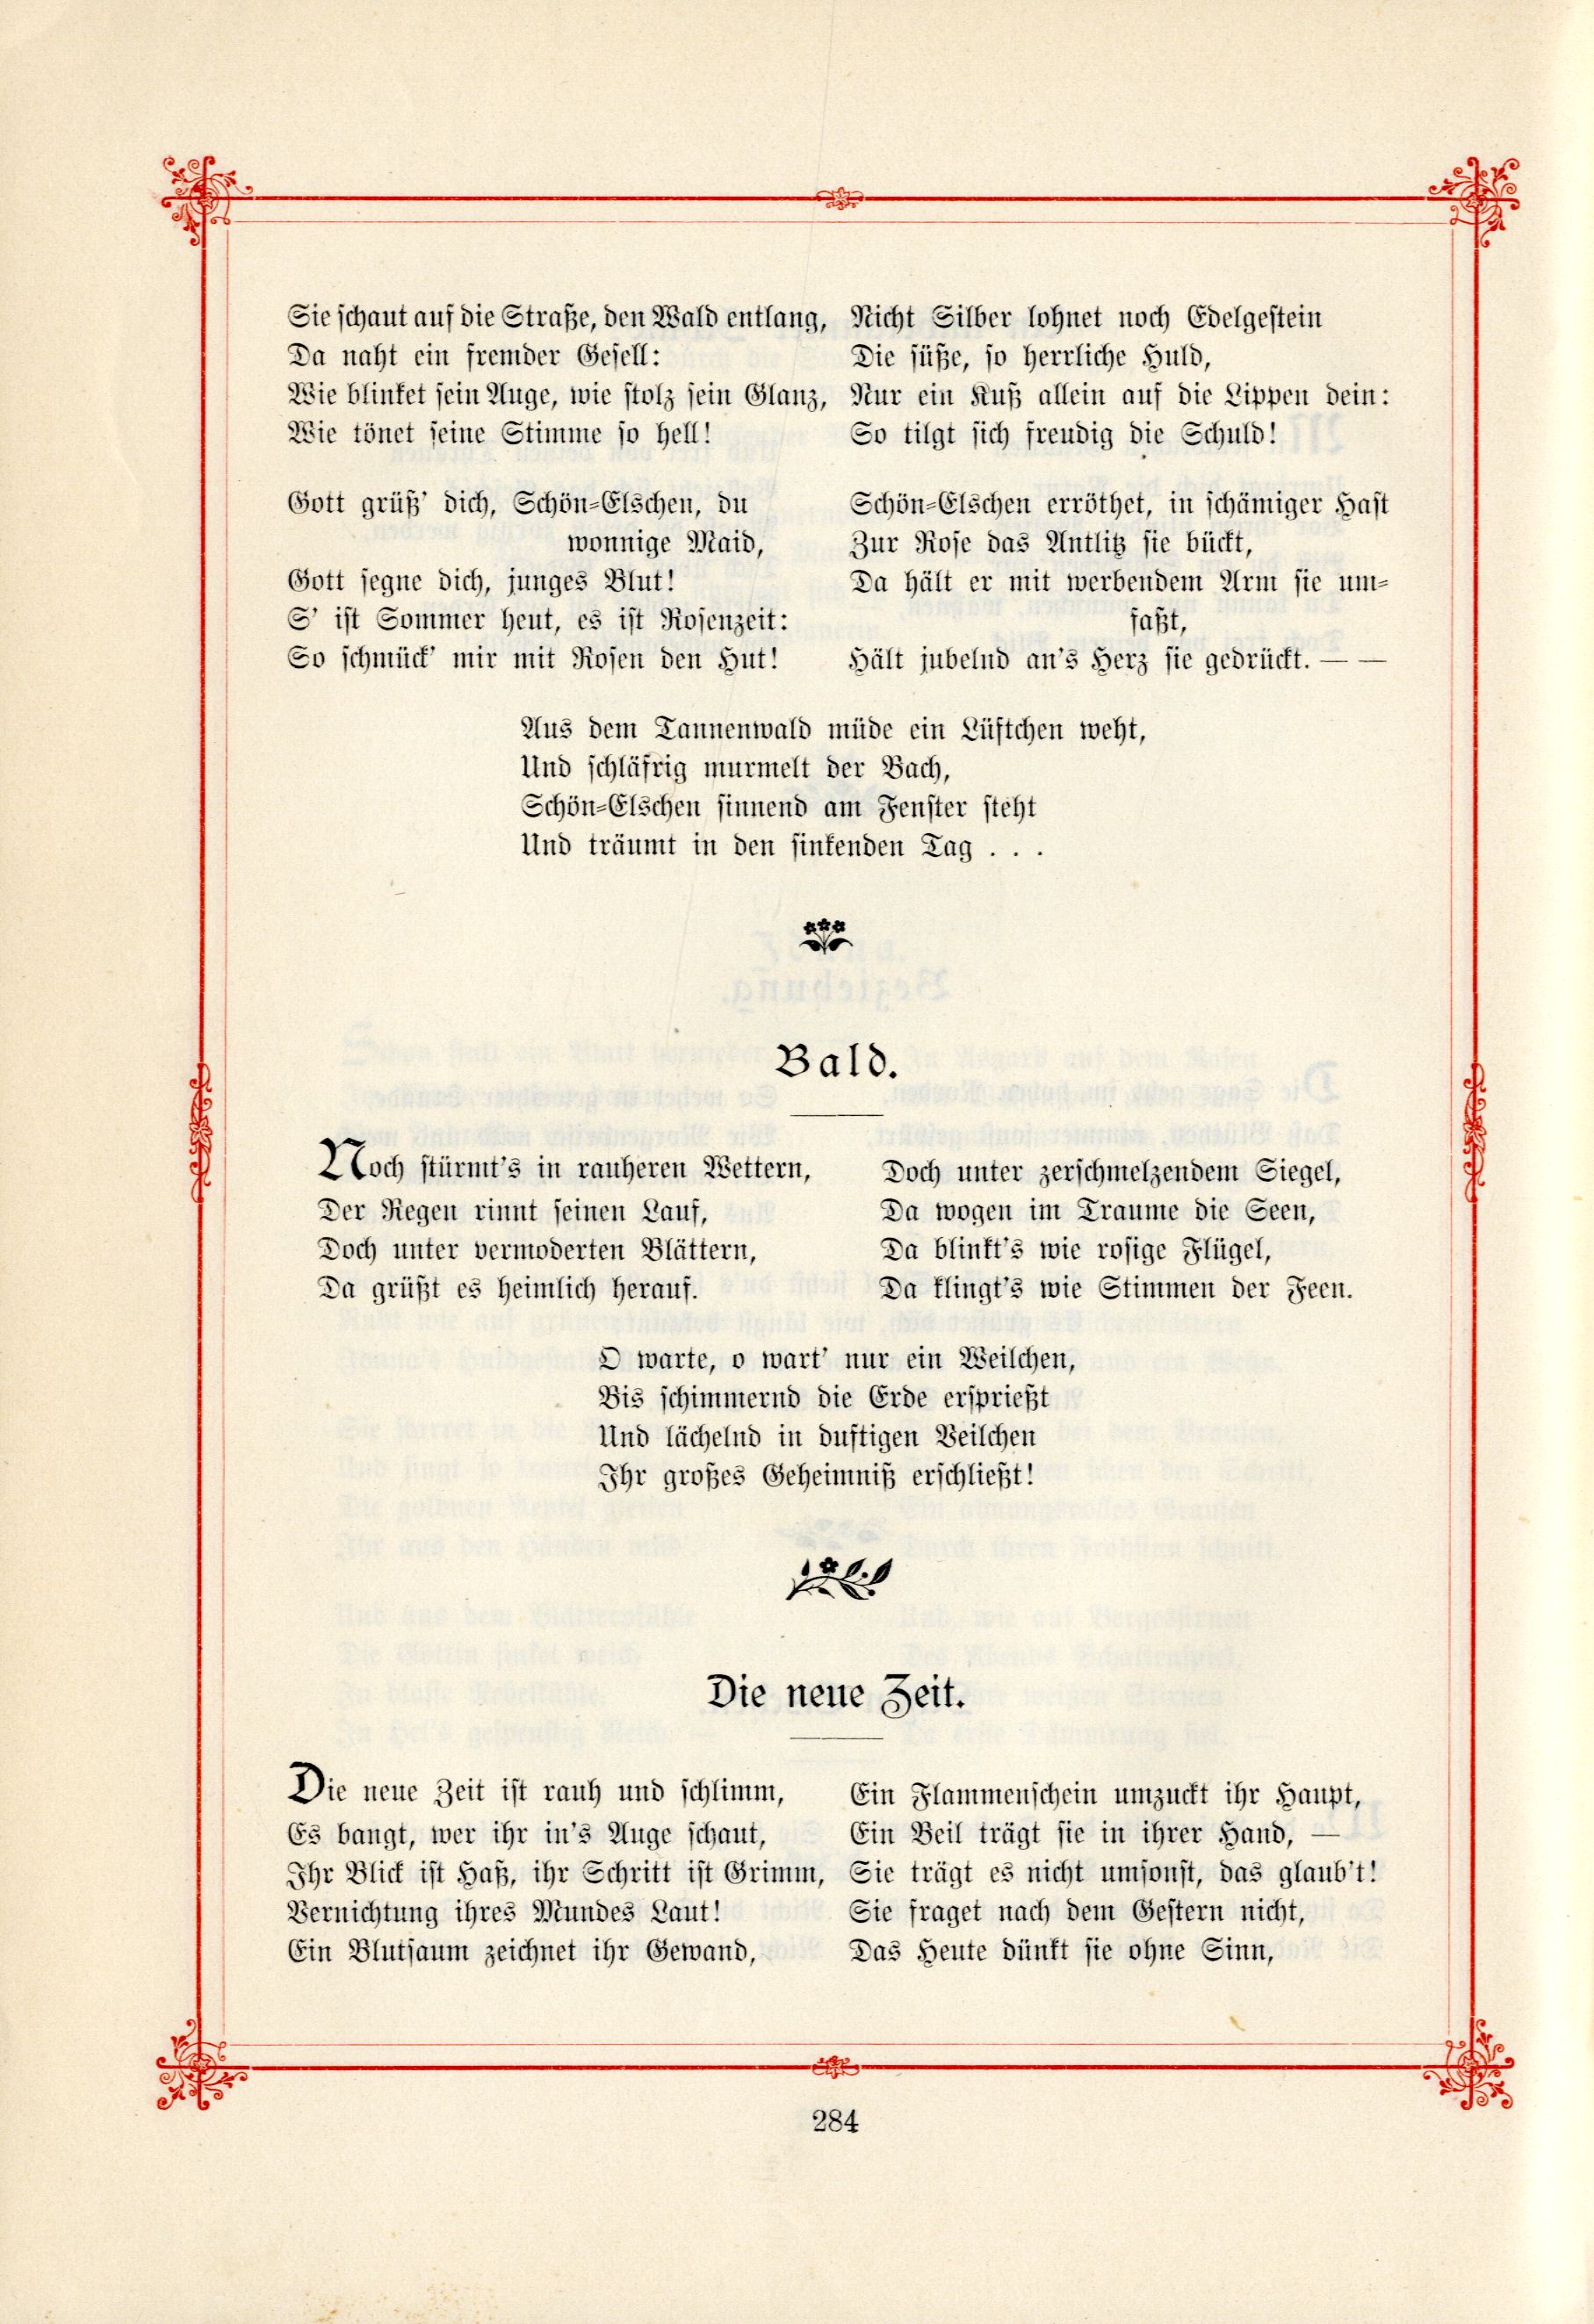 Das Baltische Dichterbuch (1895) | 330. (284) Main body of text